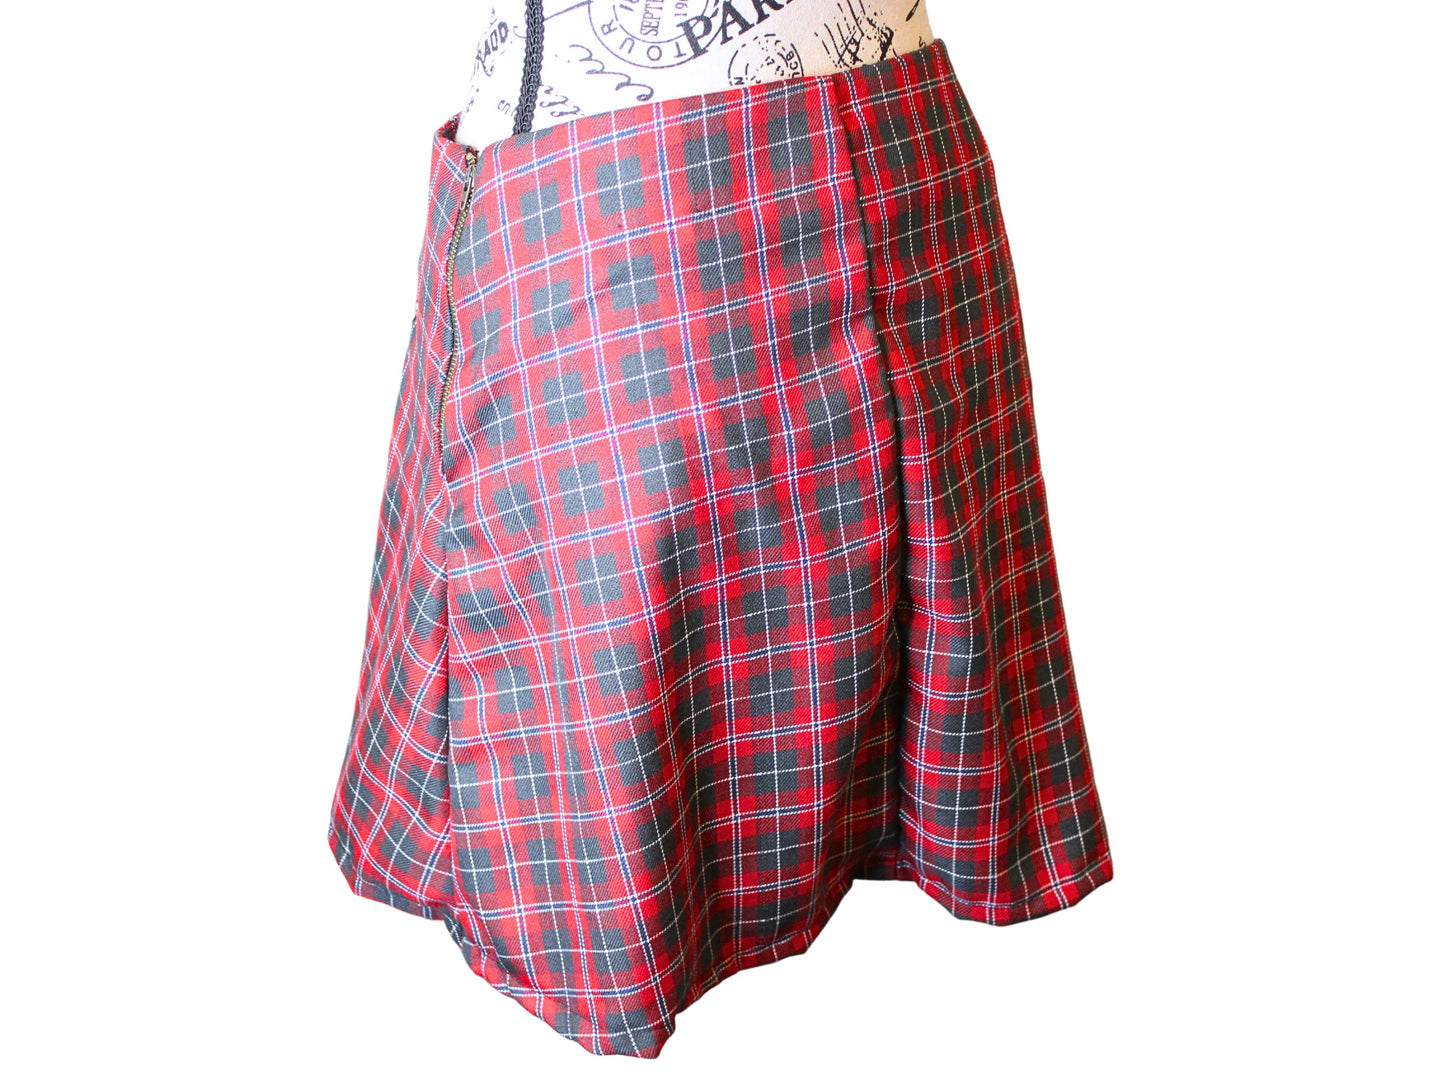 The VM Kilt Pin Skirt